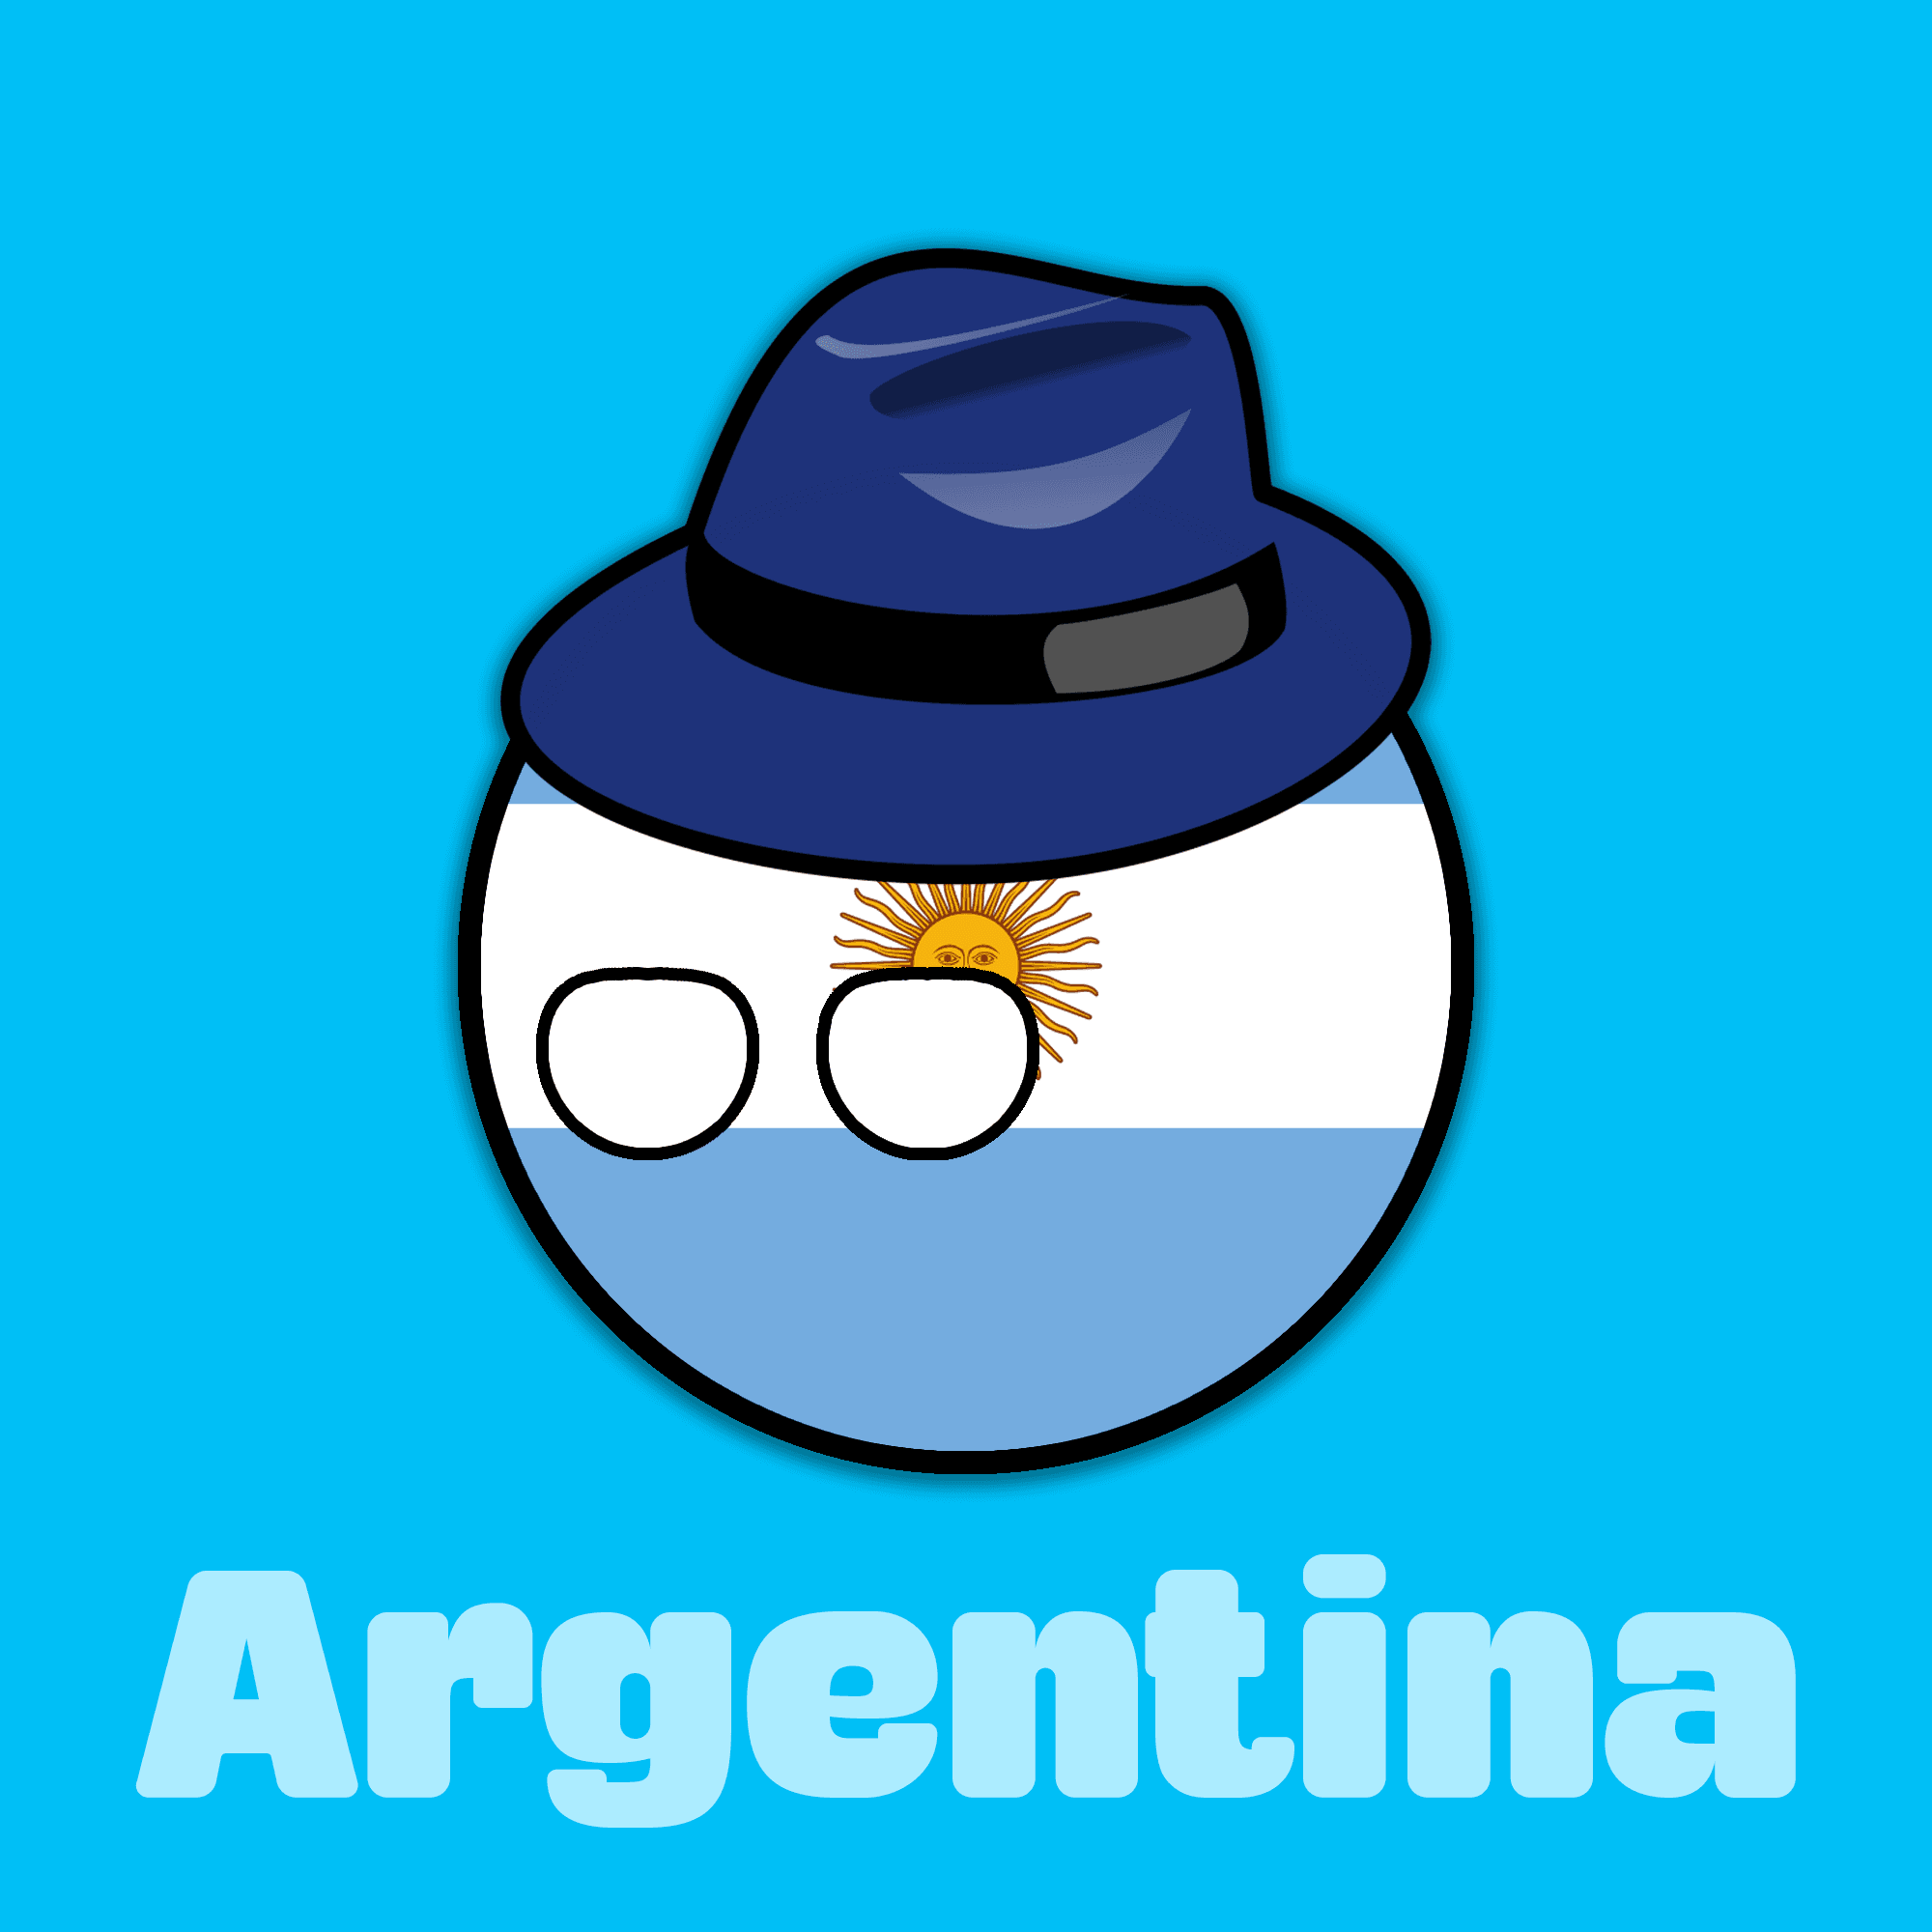 argentina countryball #1 - Epic Countryballs